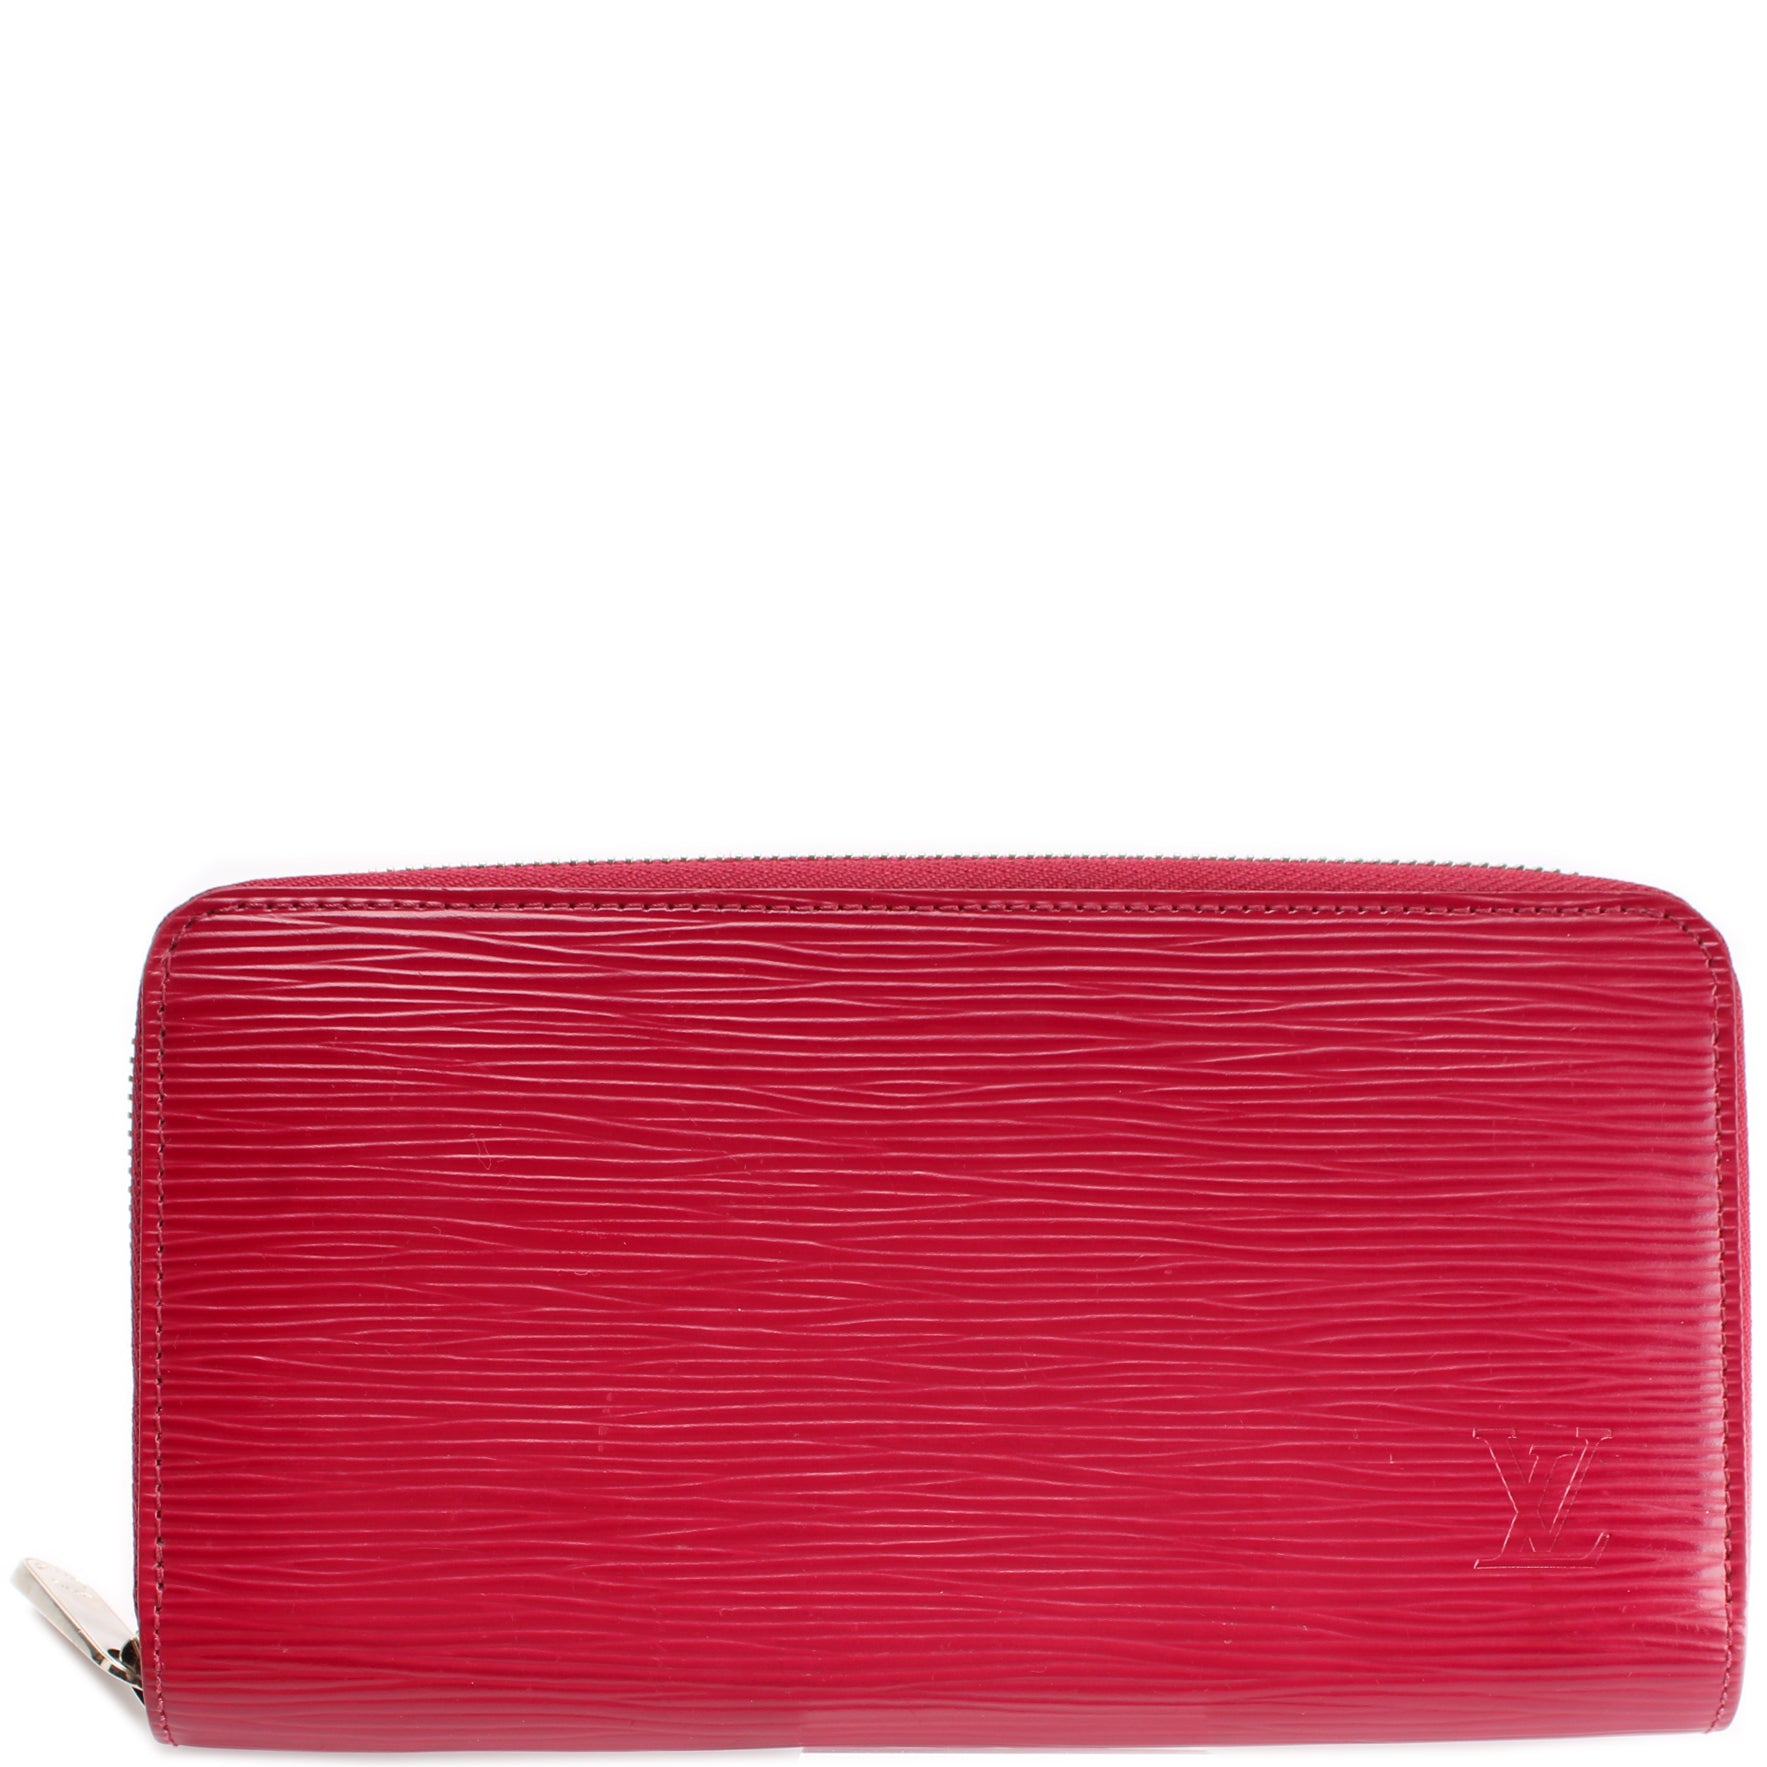 Louis Vuitton Zippy Compact Wallet Epi Leather